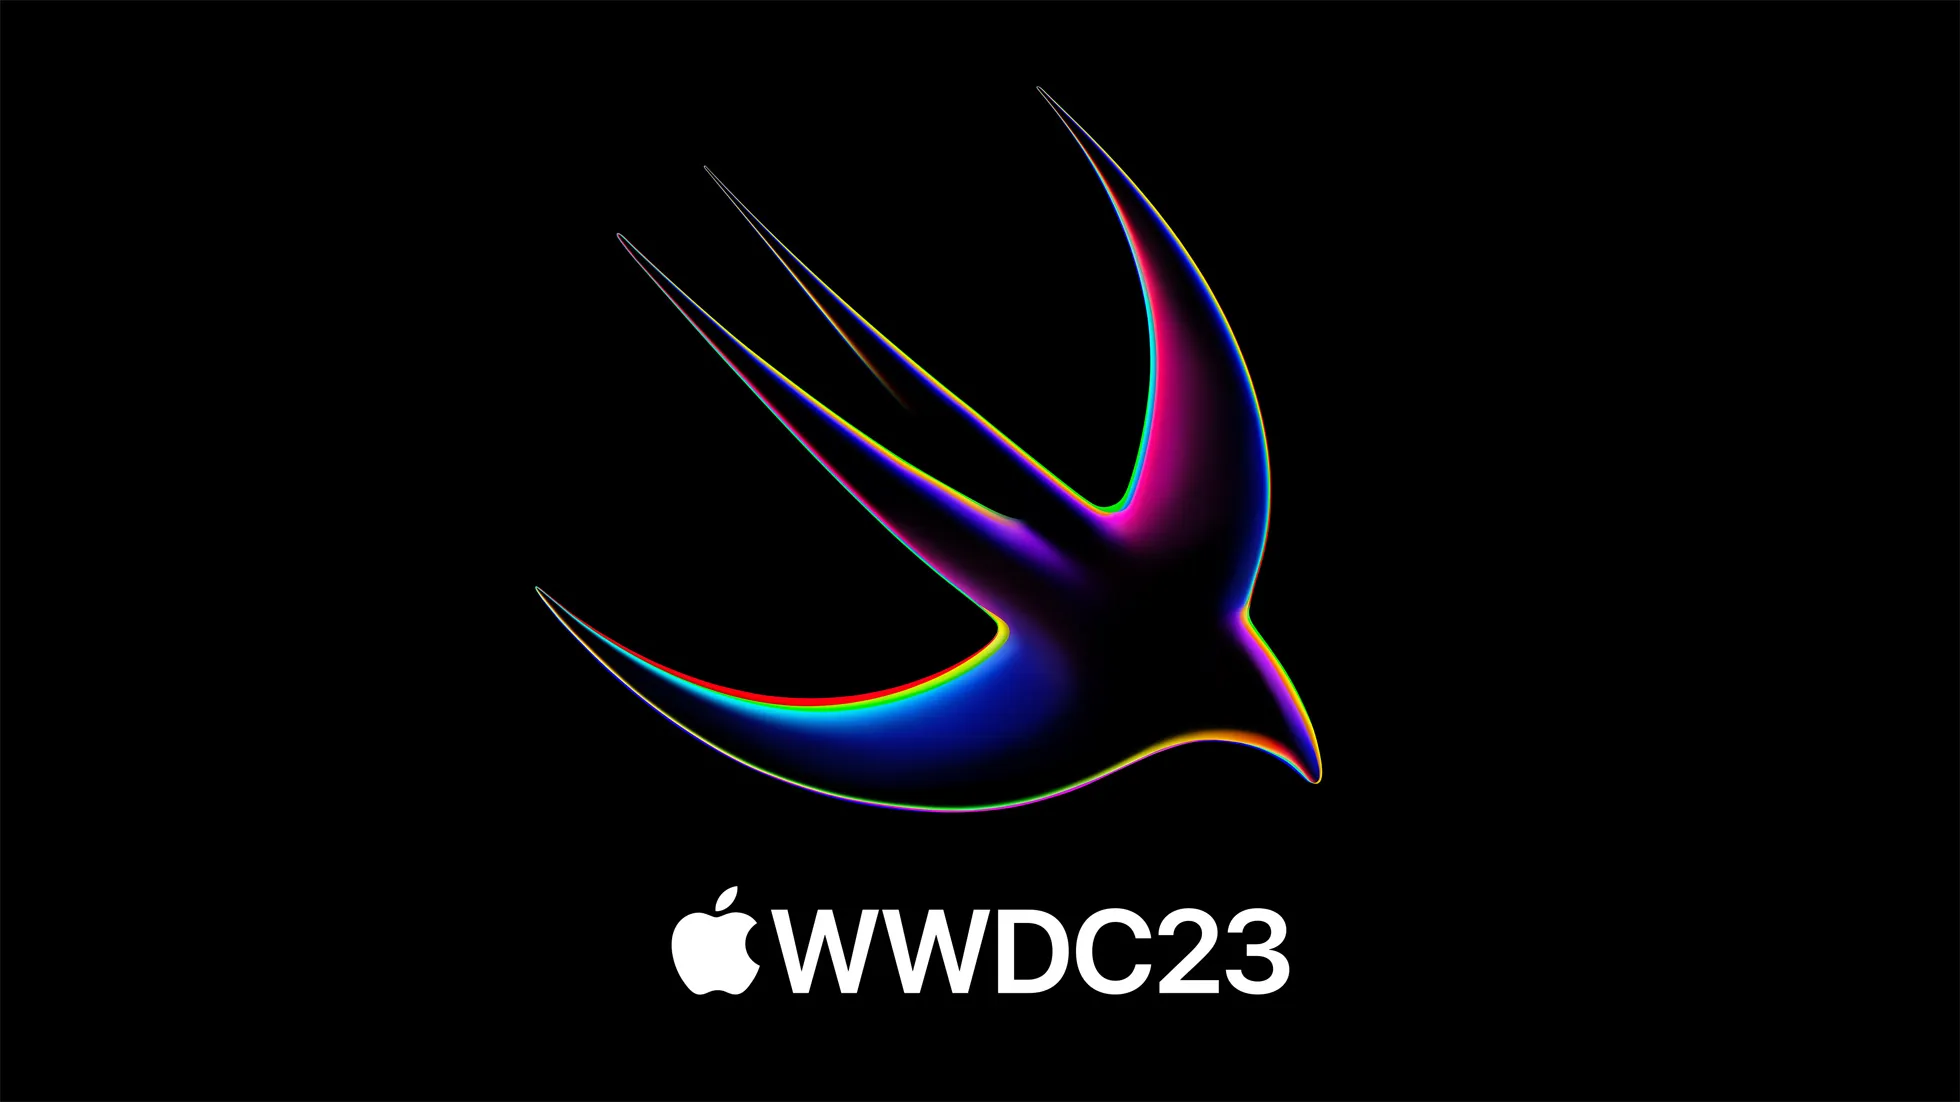 Xem trực tiếp sự kiện WWDC 2023: Loạt hệ điều hành mới cùng các thiết bị đáng mong đợi